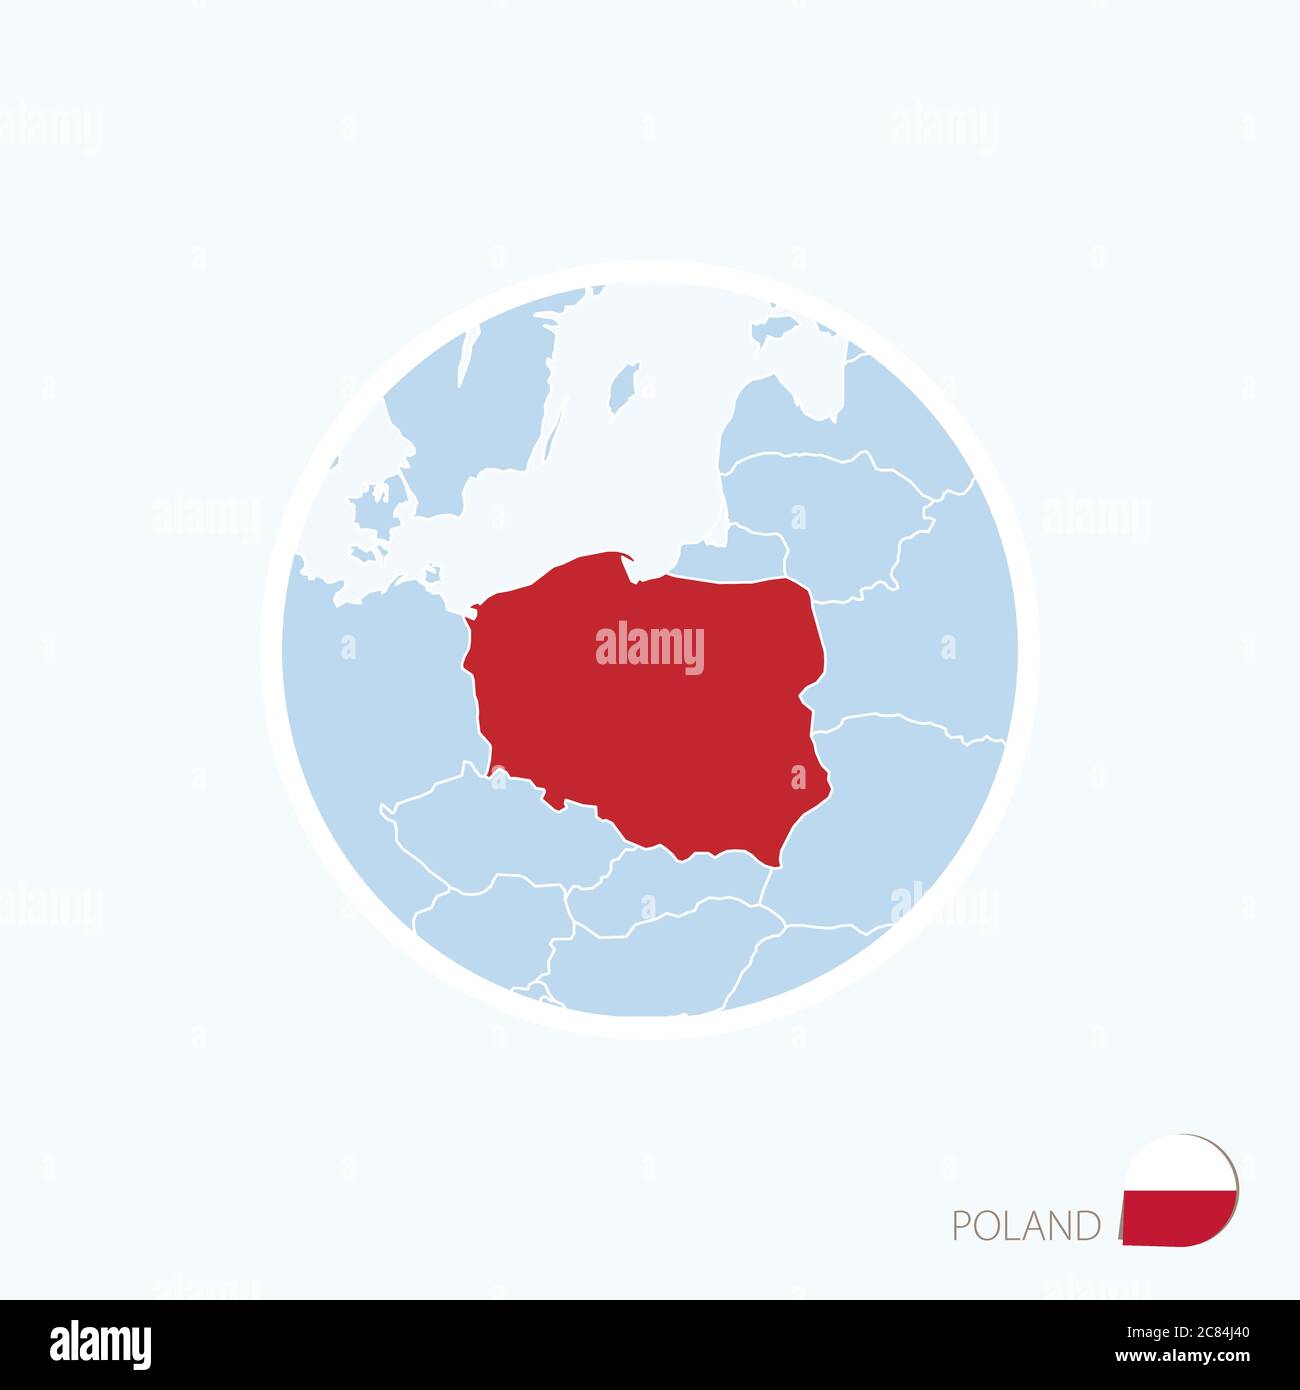 Icône de la Pologne. Carte bleue de l'Europe avec la Pologne en surbrillance en rouge. Illustration vectorielle. Illustration de Vecteur